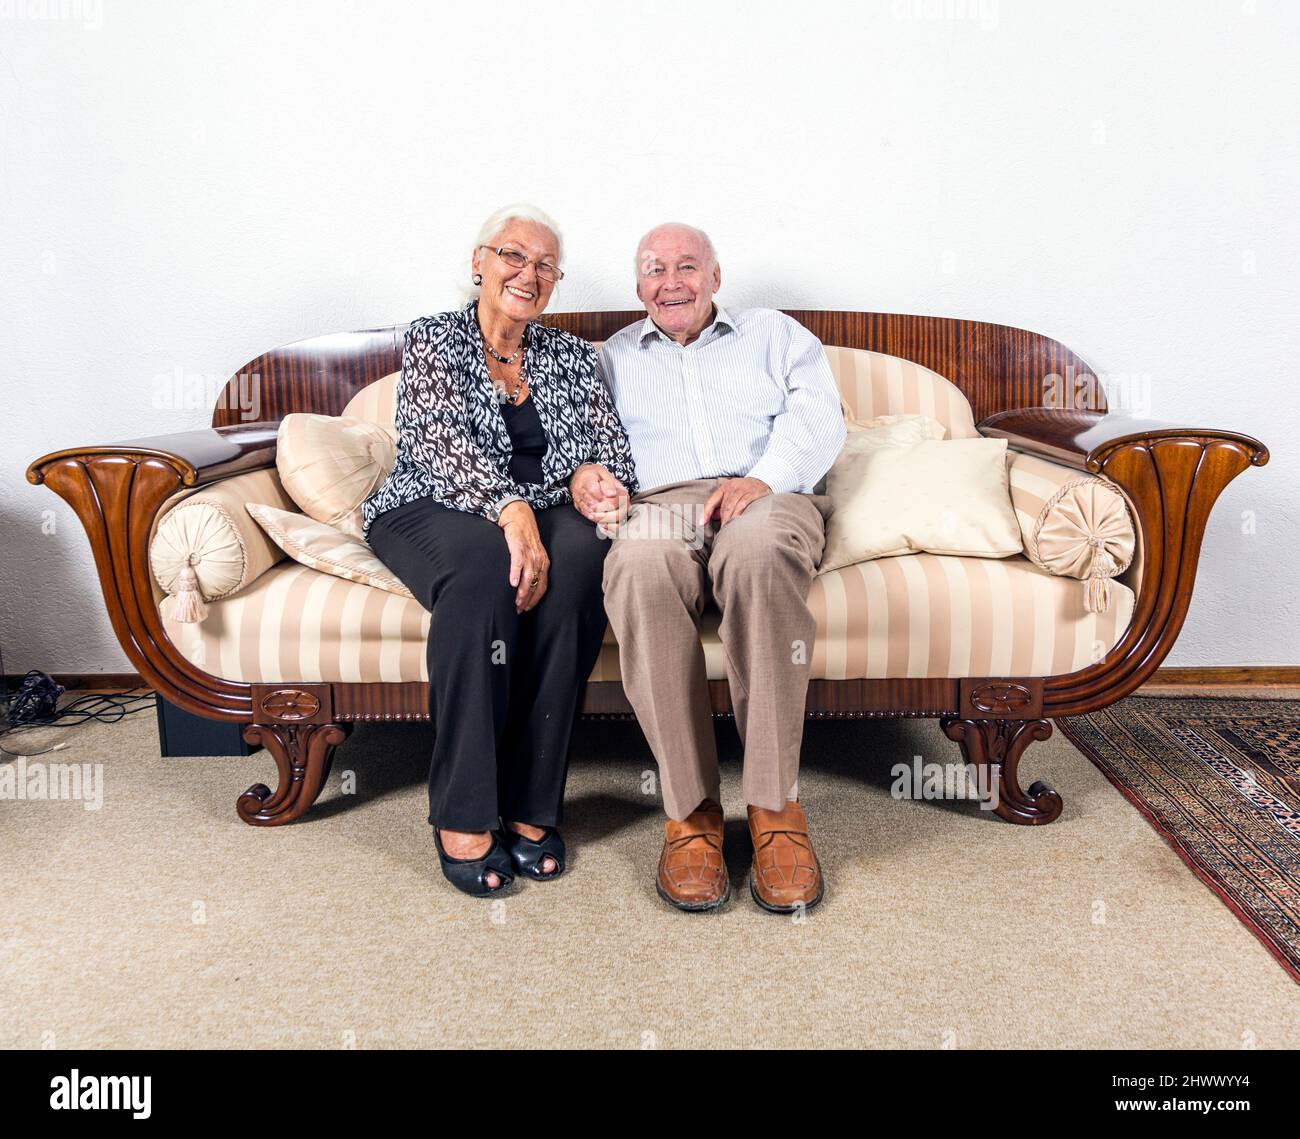 Caucasian coppia senior in amano sedersi su un divano Foto Stock